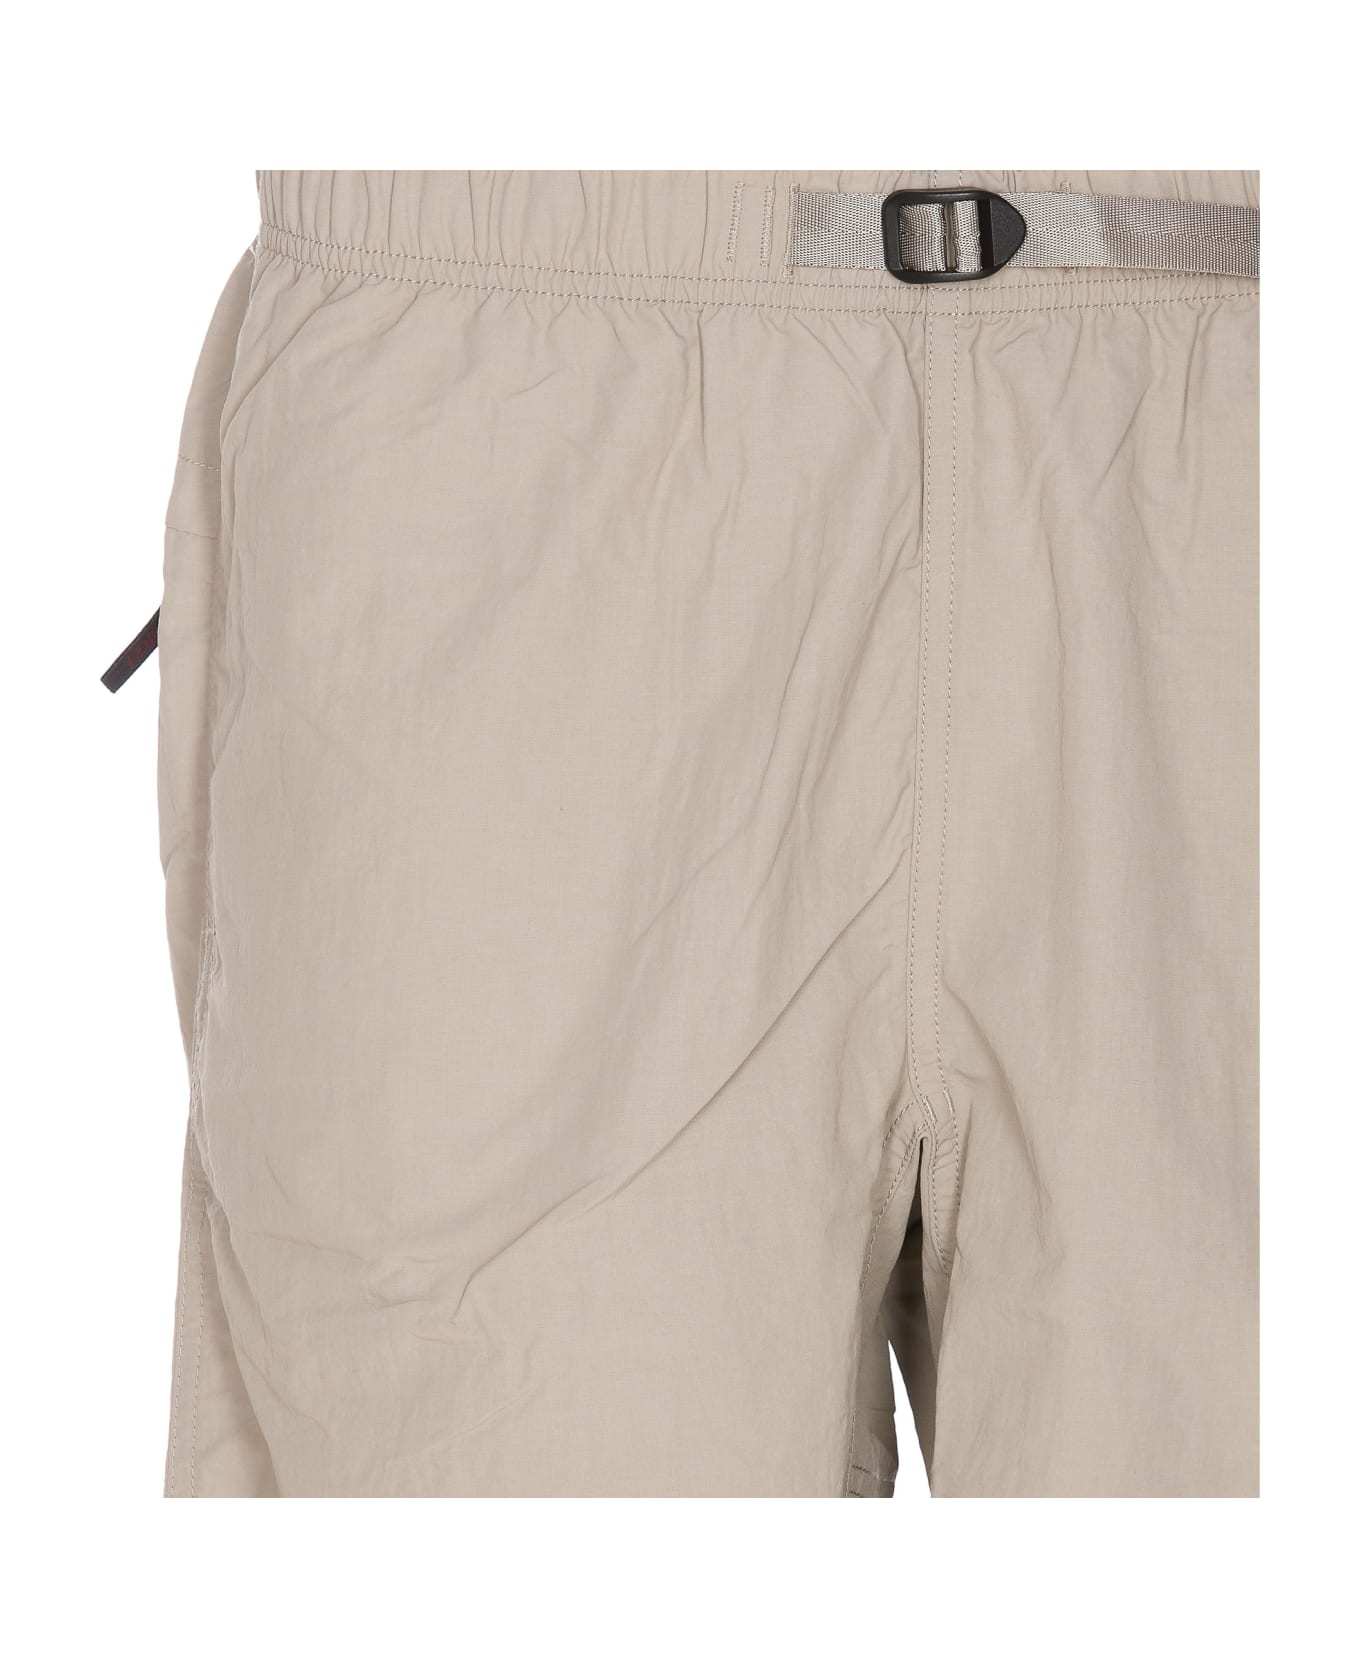 Gramicci Nylon Packable G-shorts - Beige ショートパンツ